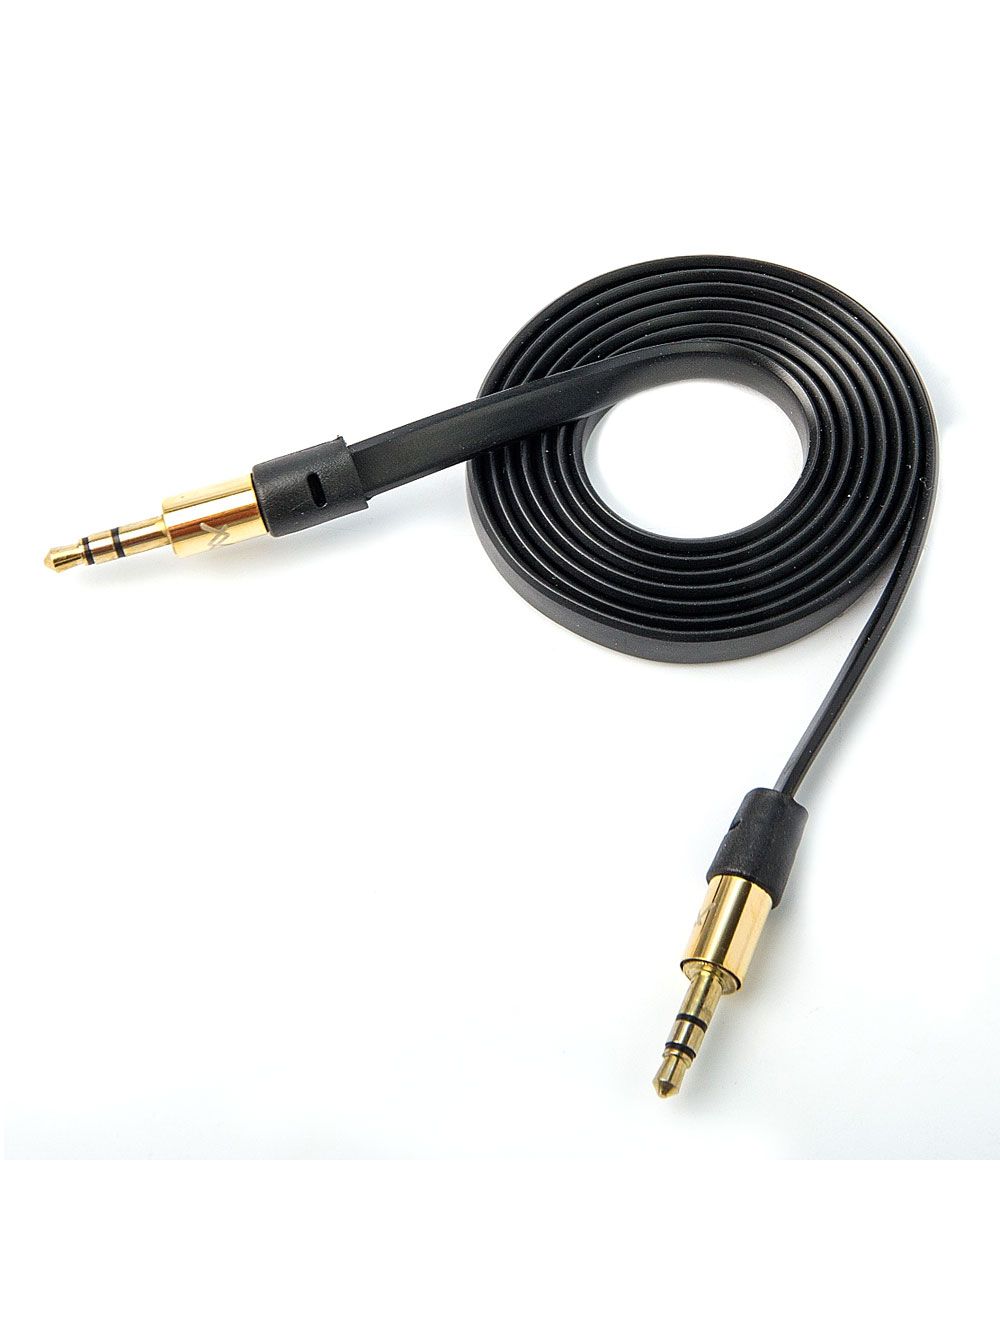 L'AVVENTO (MX327) AUX Cable - 3.5 mm to 3.5 mm - 1M - Black